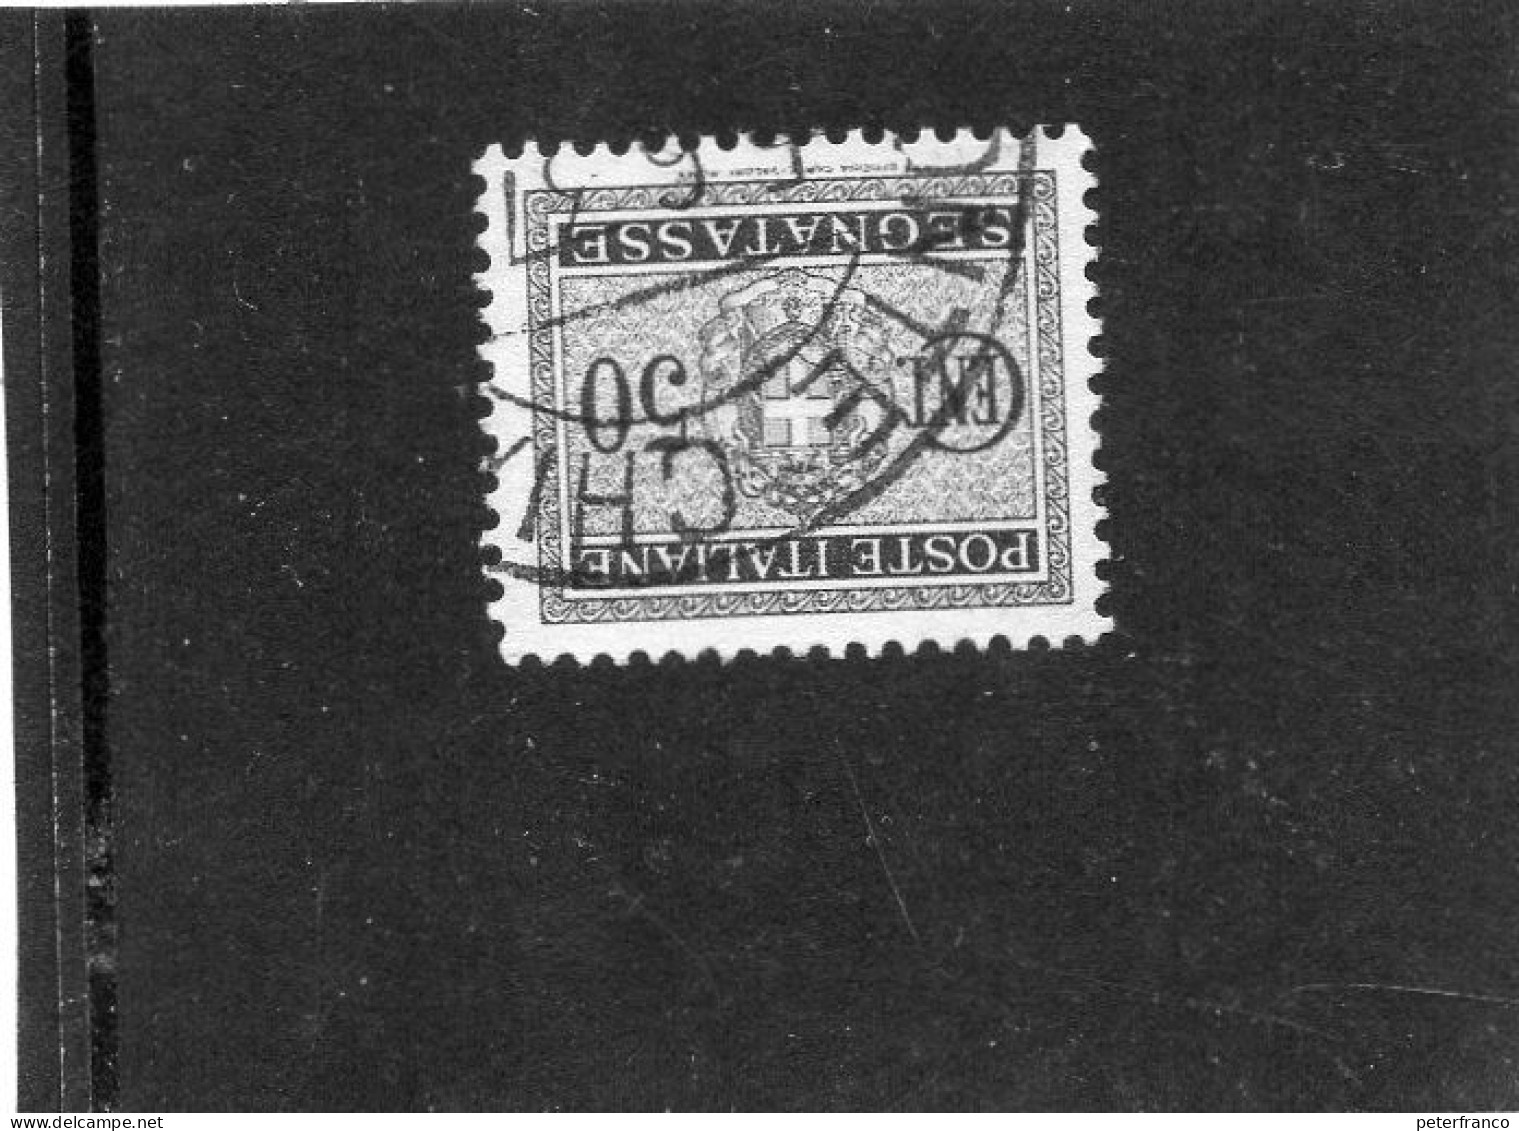 1934 Italia - Stemma - Postage Due